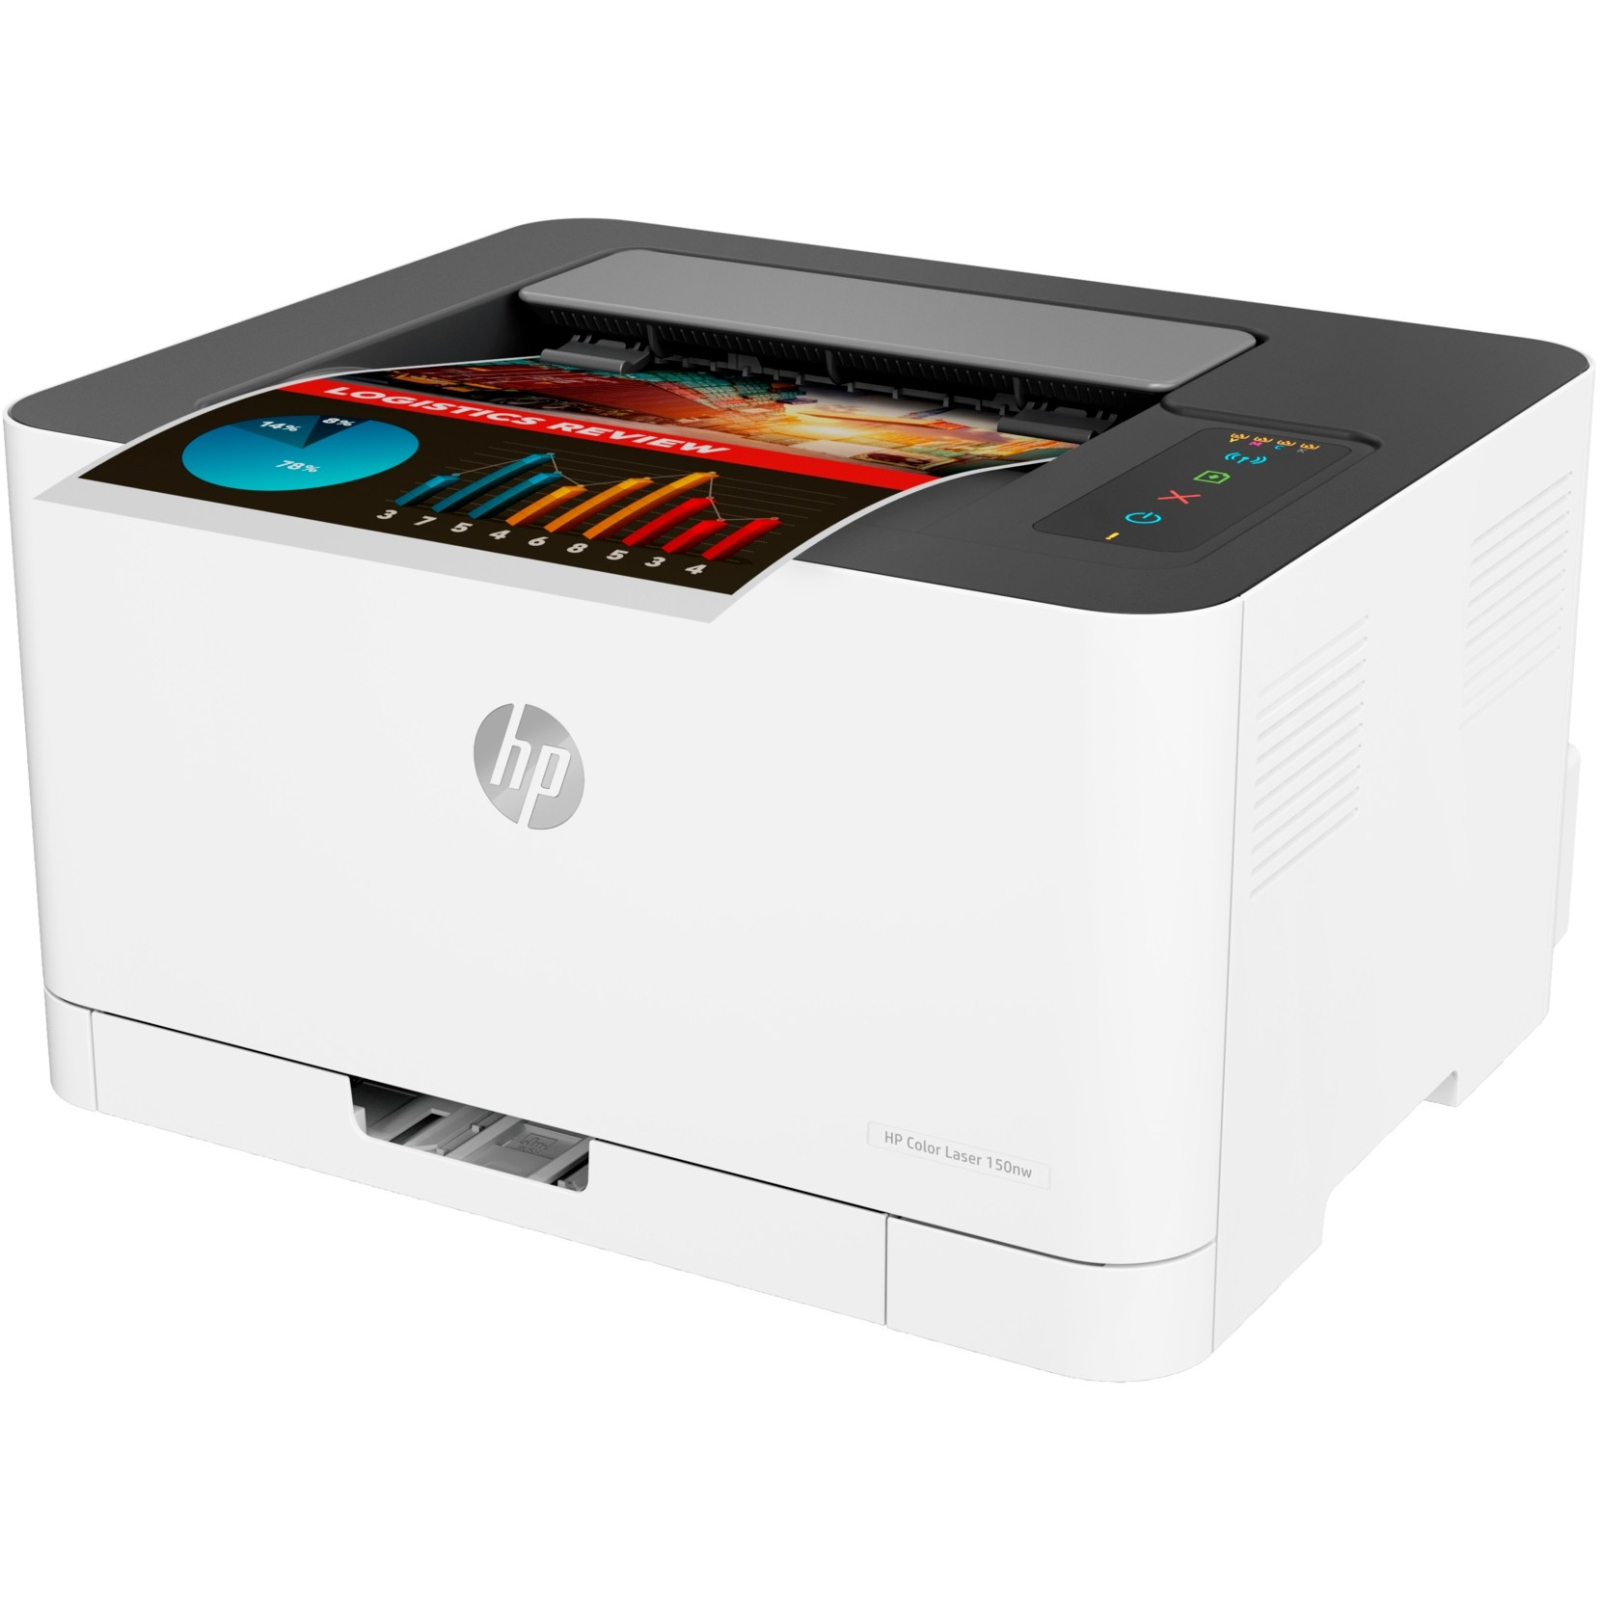 Лазерный принтер HP Color LaserJet 150nw с Wi-Fi (4ZB95A) изображение 3